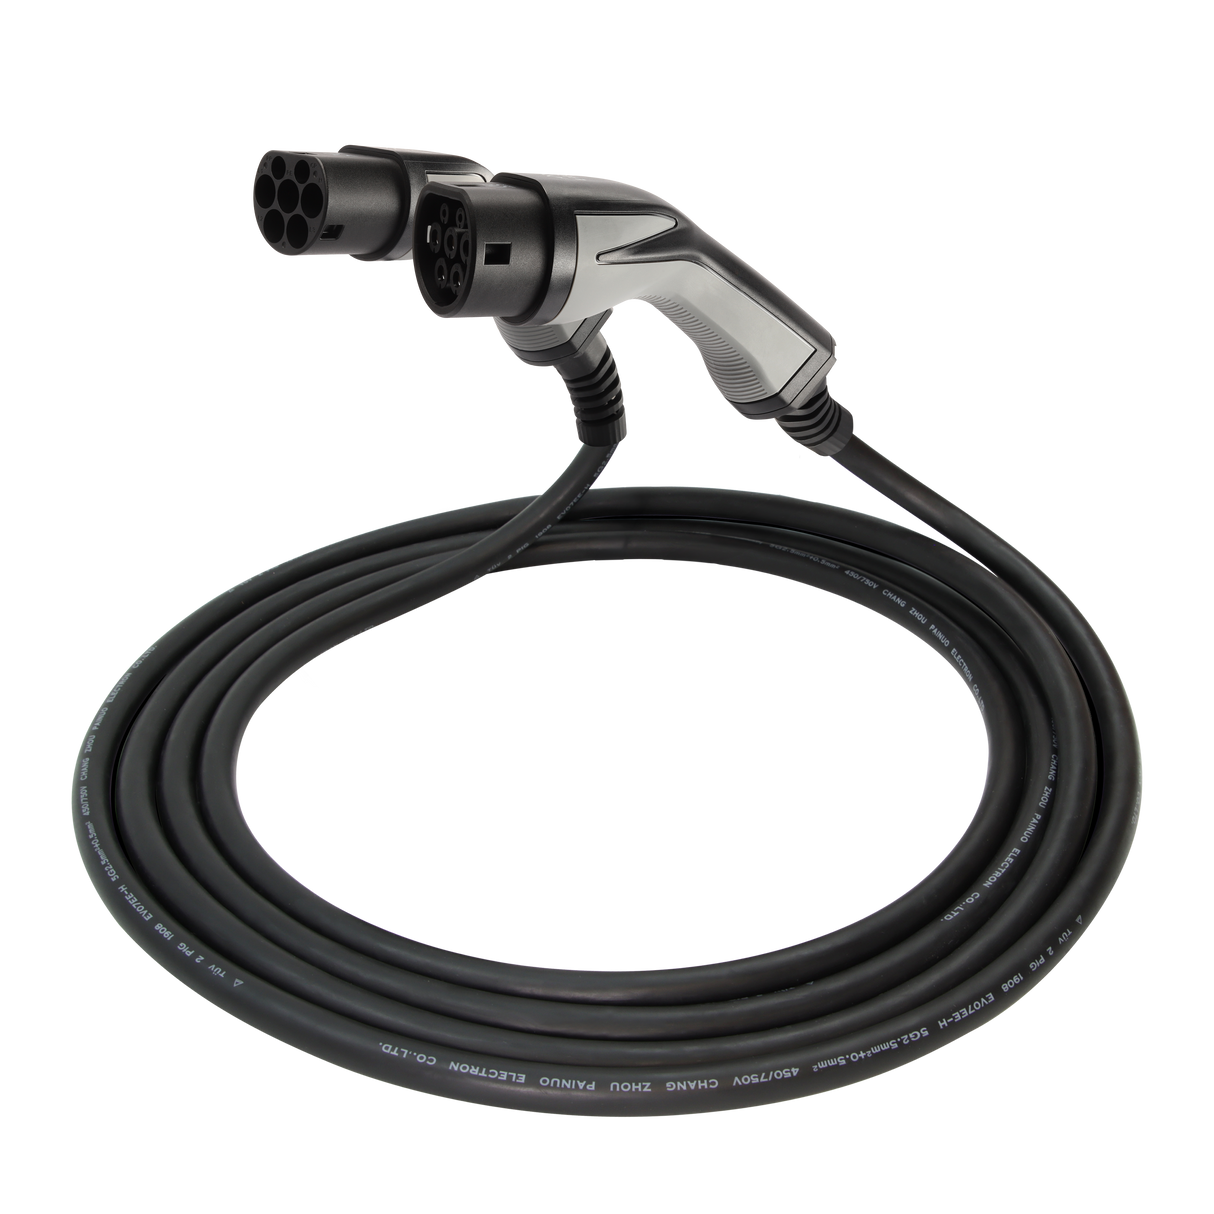 Charging cable Bentley Bentayga - Erock Pro Type 2 - 16A 3 phase (11 kW)